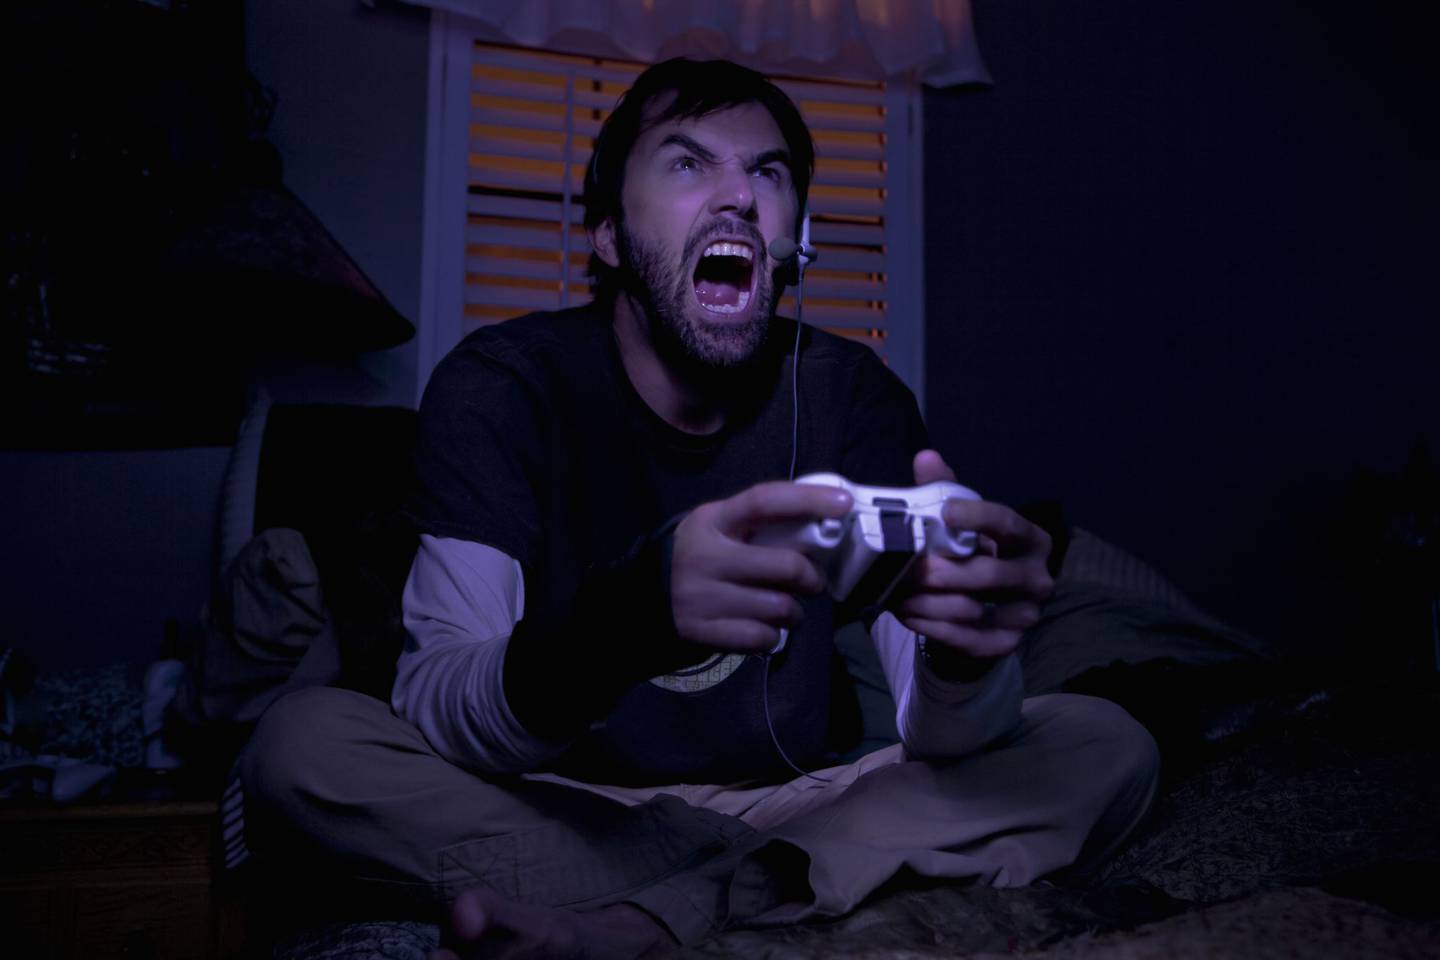 A más de uno se le pasa la mano con los insultos mientras juega videojuegos. Foto: Esquire.